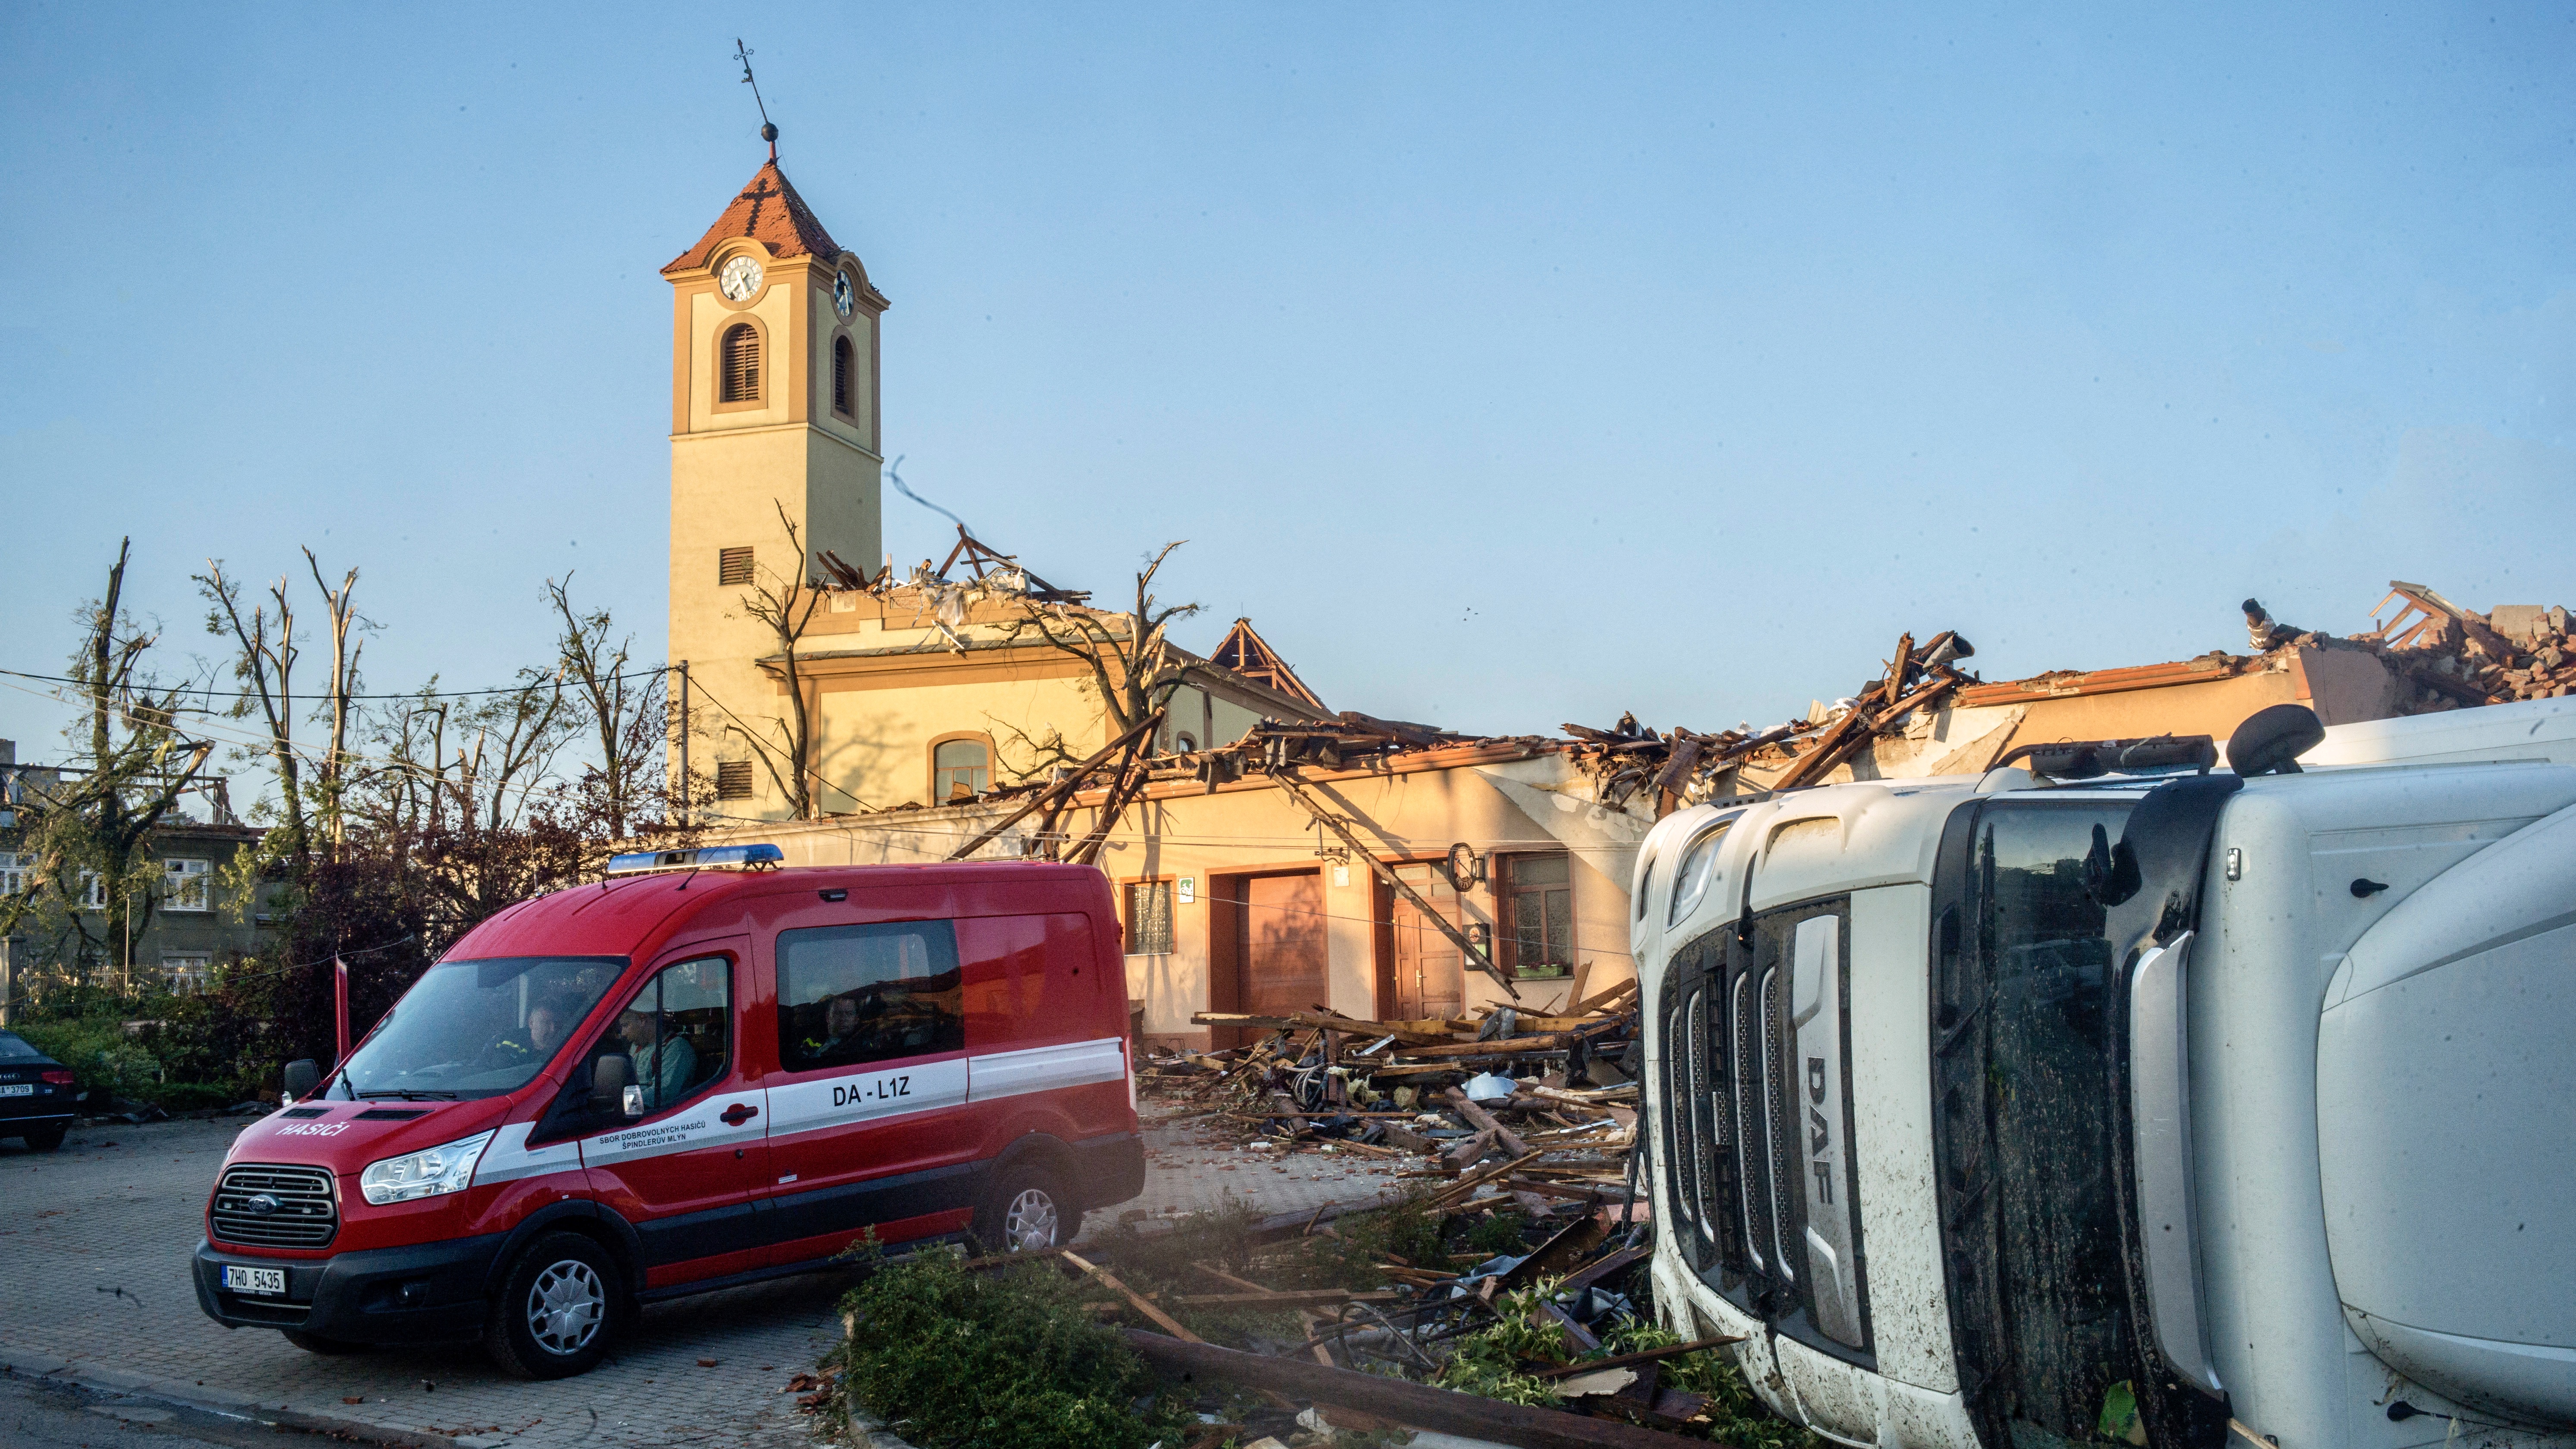 2021 júniusában tornádó pusztított Csehországban, holott az időpont és a helyszín alapján ez nem volt indokolt. A jövőben megszaporodhatnak az ehhez hasonló szélsőséges időjárási jelenségek.